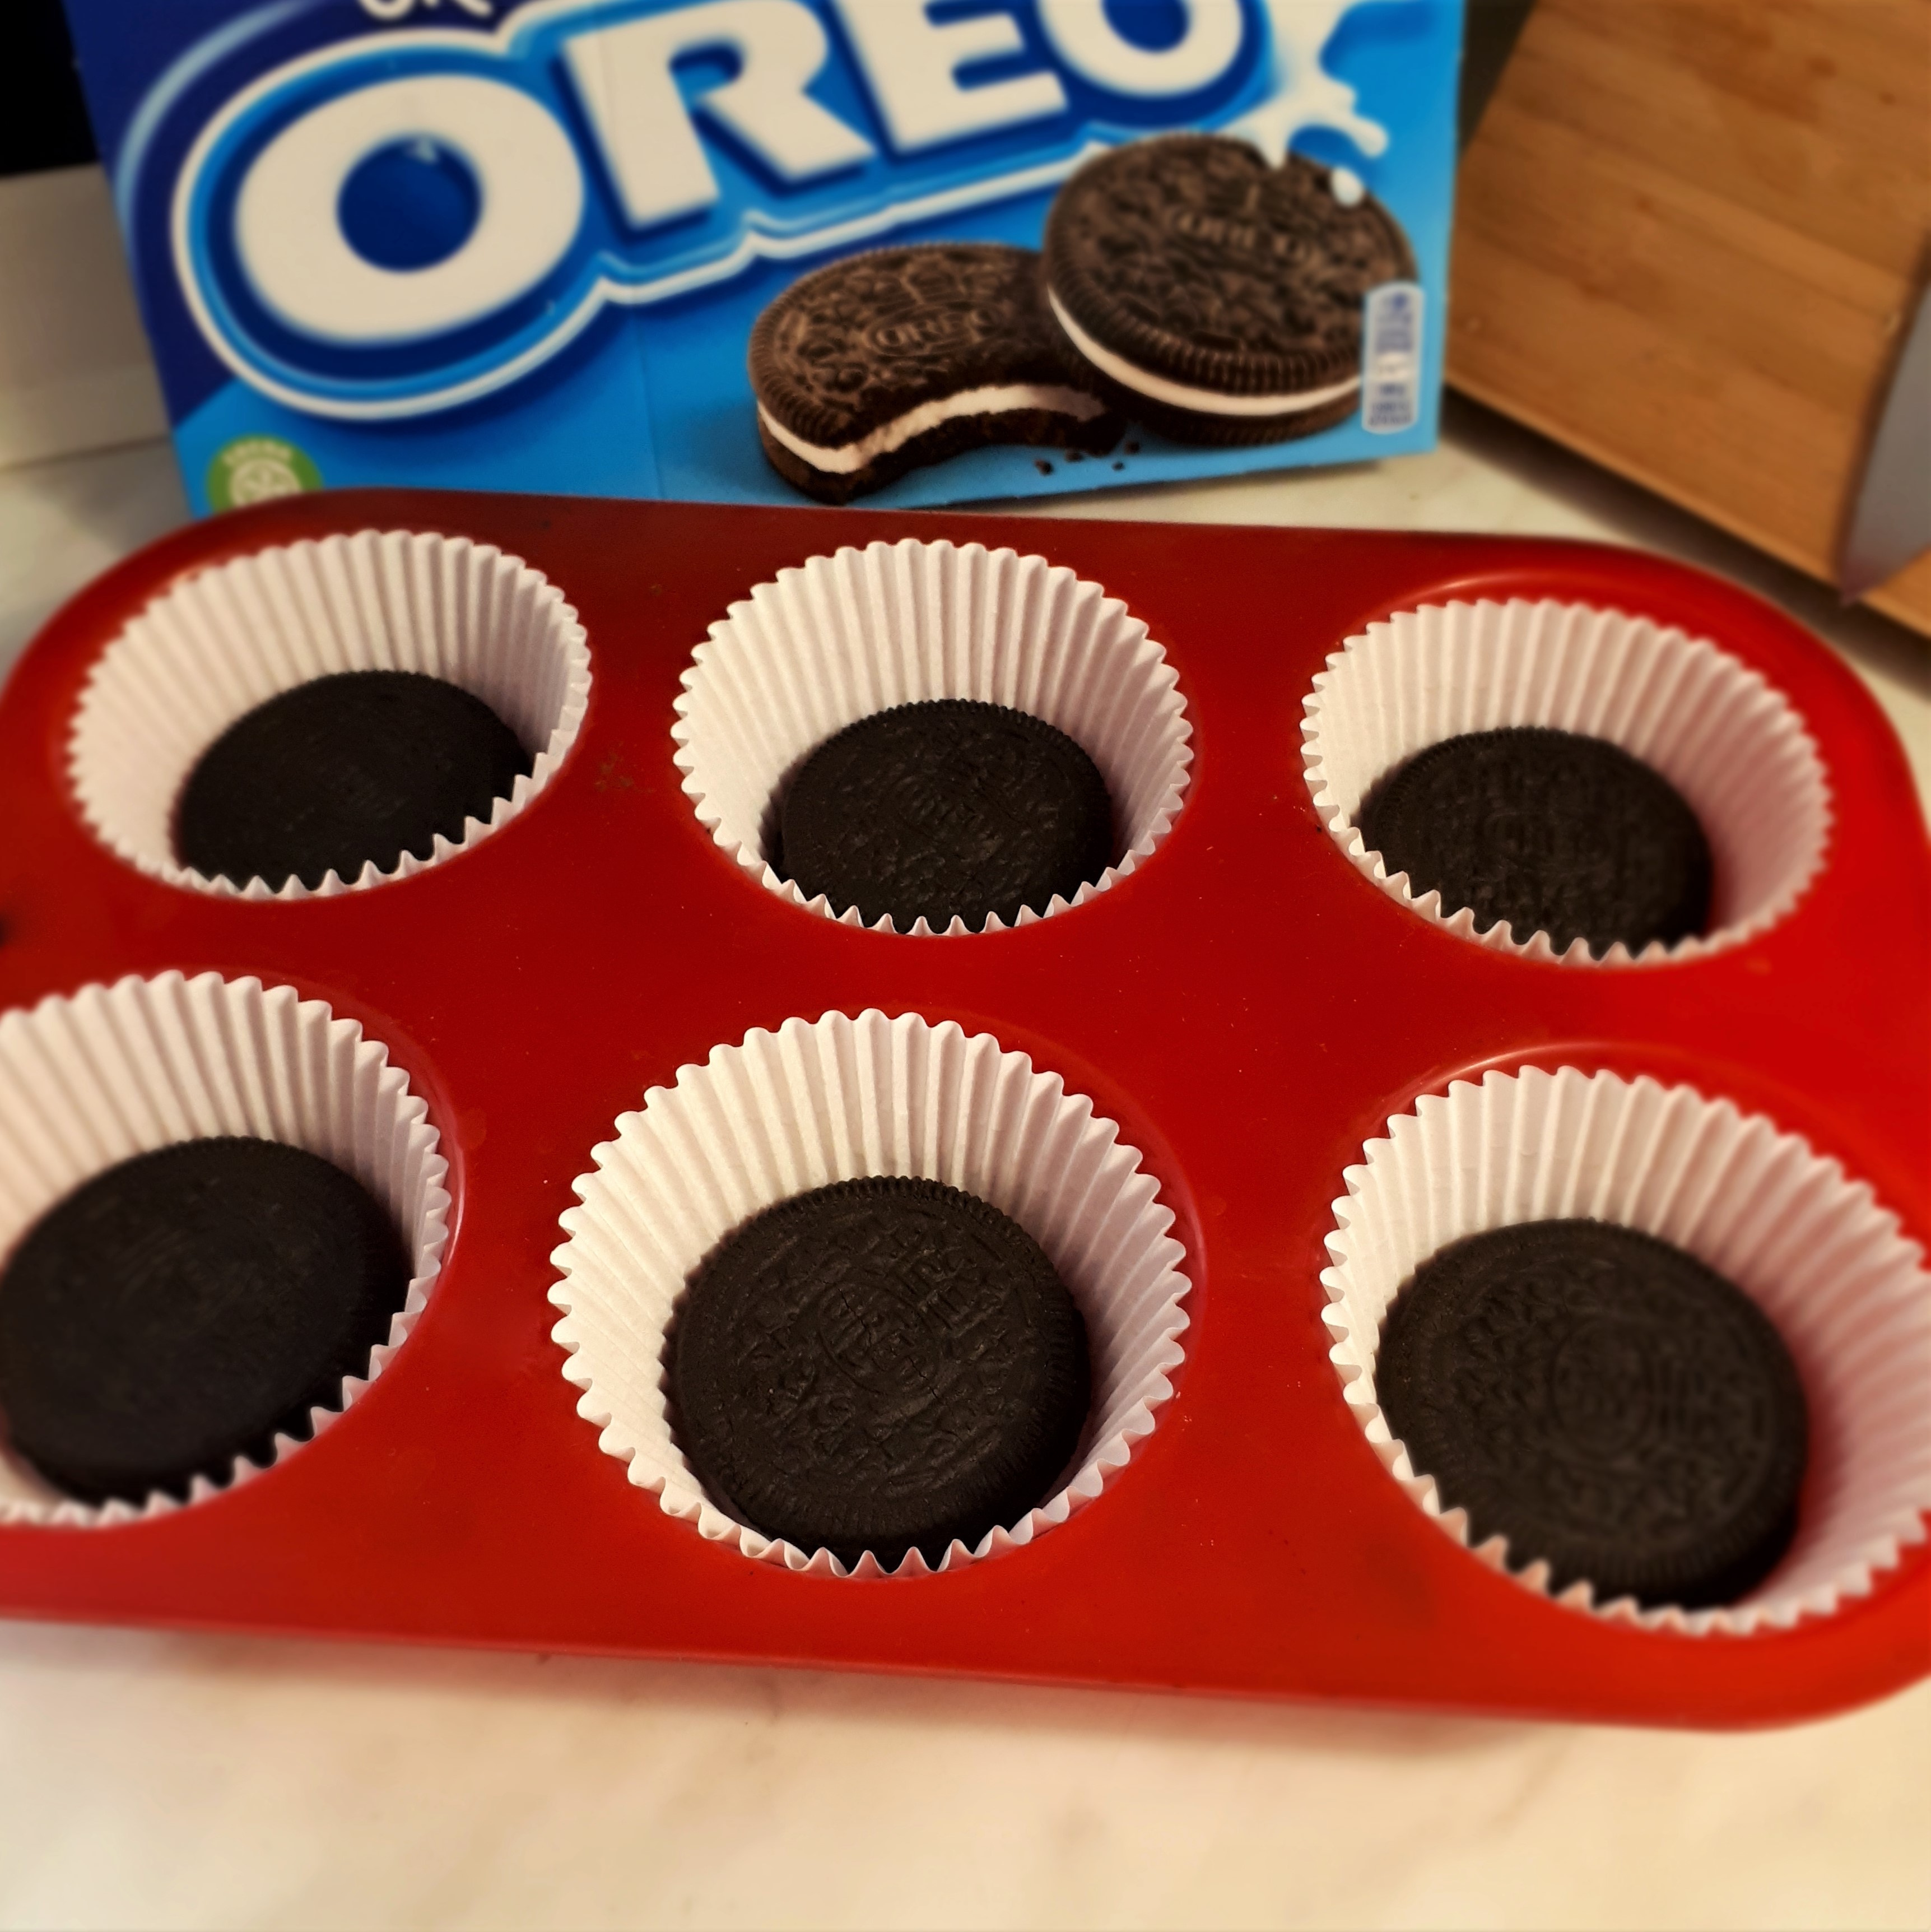 Červená forma na muffiny 6 bielych papierových košíčkov na dne každého Oreo sušienka v pozadí krabica Oreo sušienok